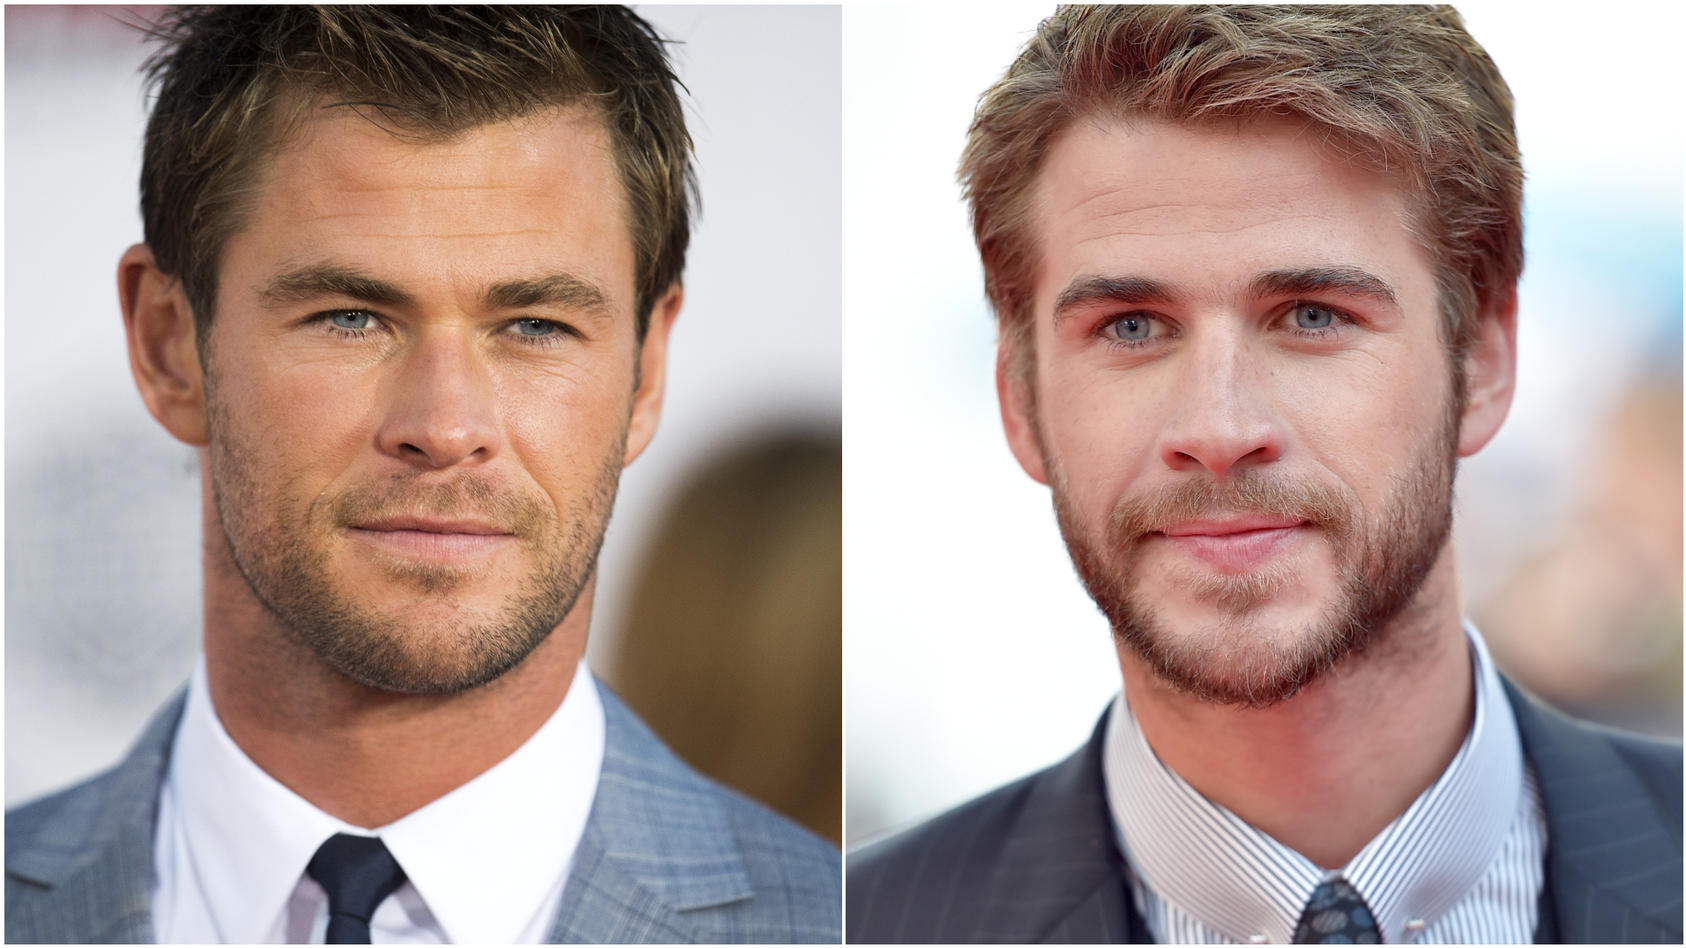 Chris und Liam Hemsworth haben sich in Hollywood einen Namen gemacht. 